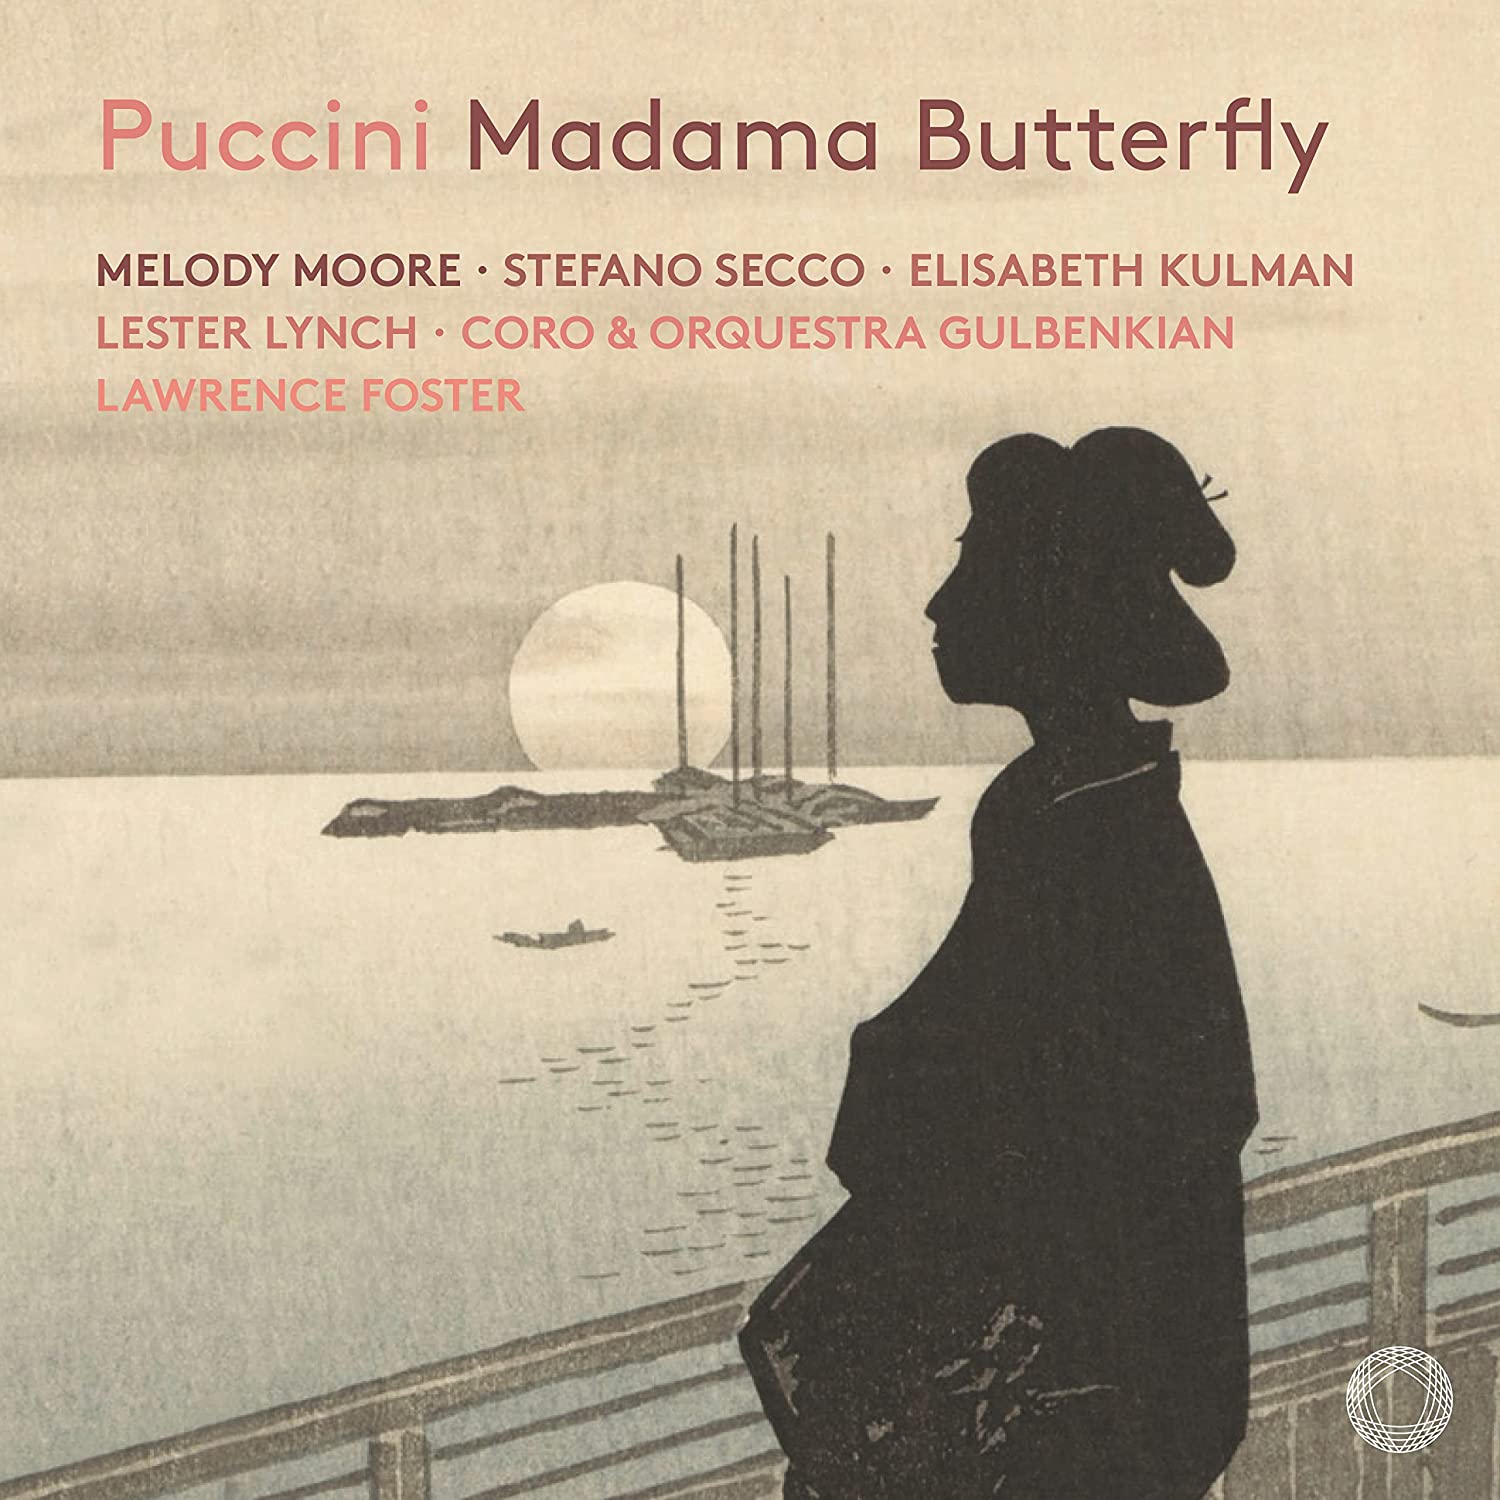 Audio Cd Giacomo Puccini - Madama Butterfly 2 Cd NUOVO SIGILLATO EDIZIONE DEL SUBITO DISPONIBILE